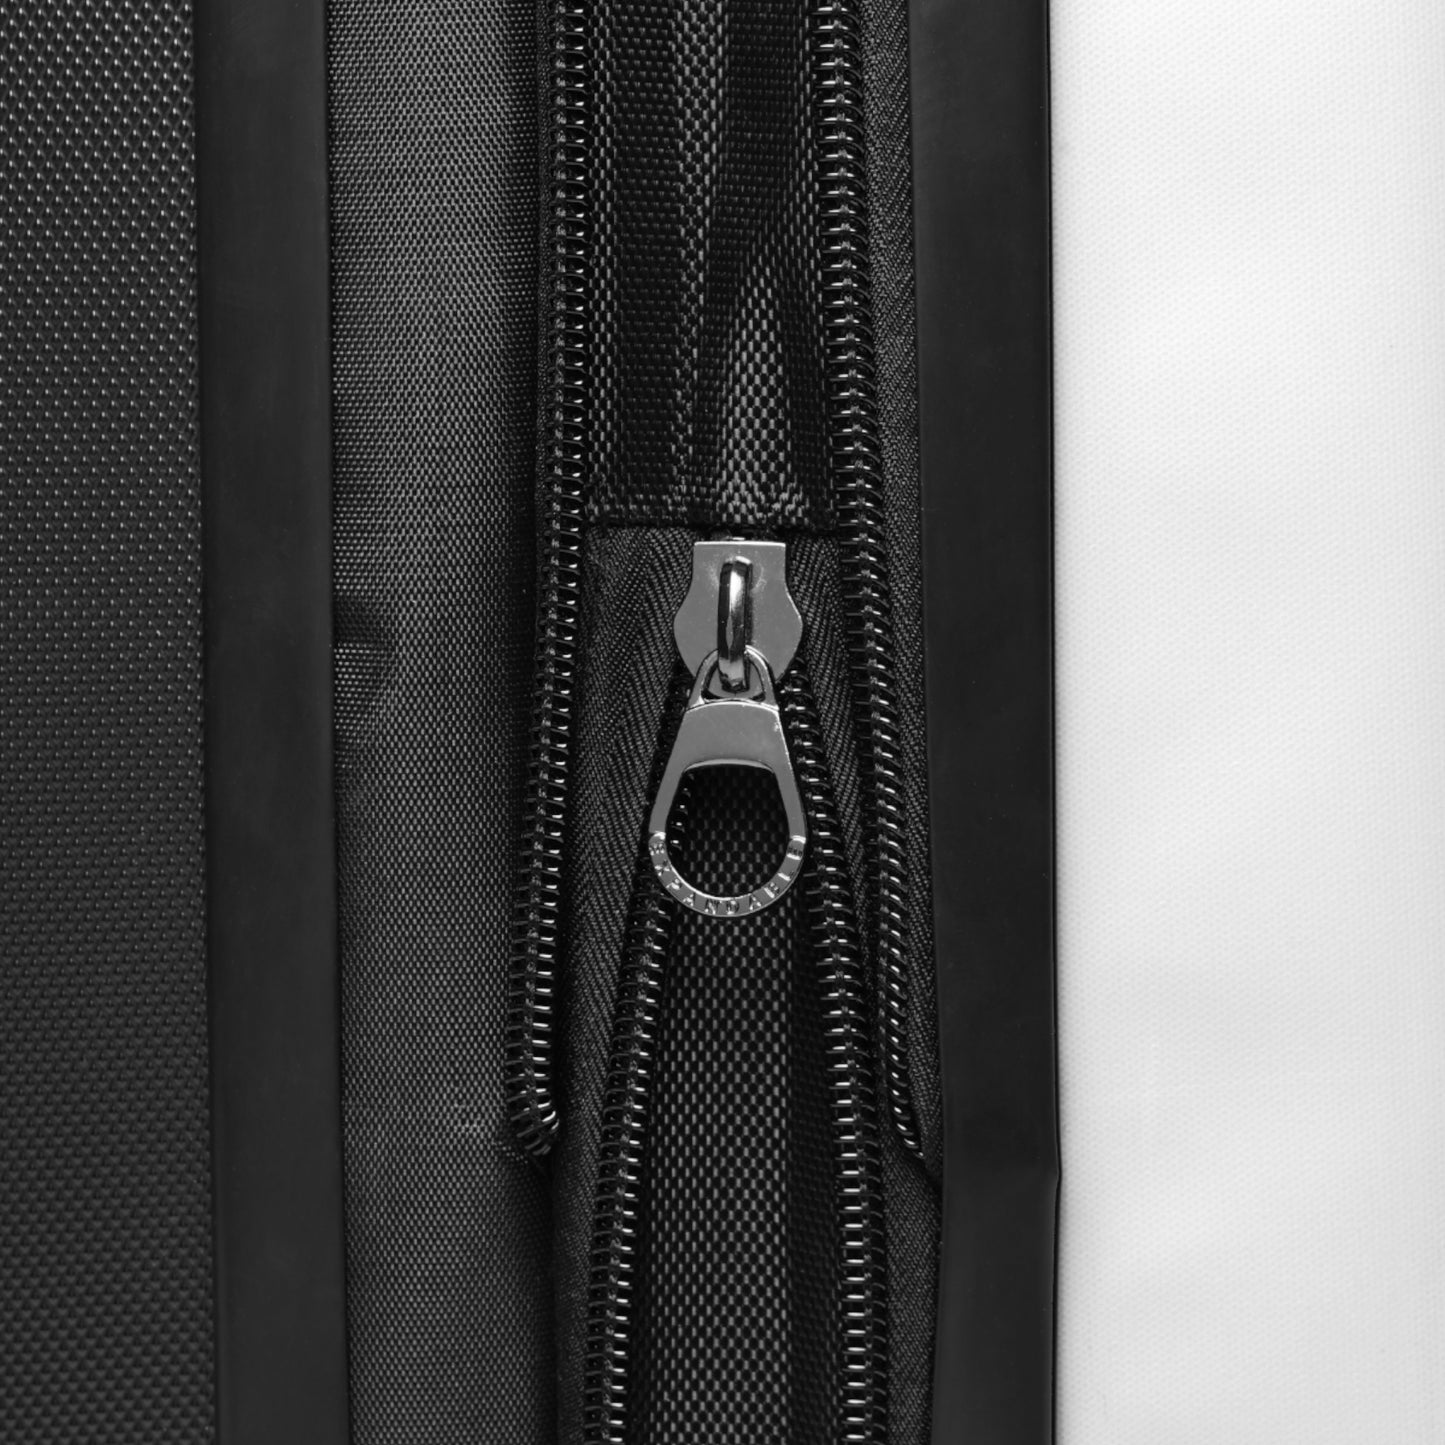 Piet Mondrian suitcase